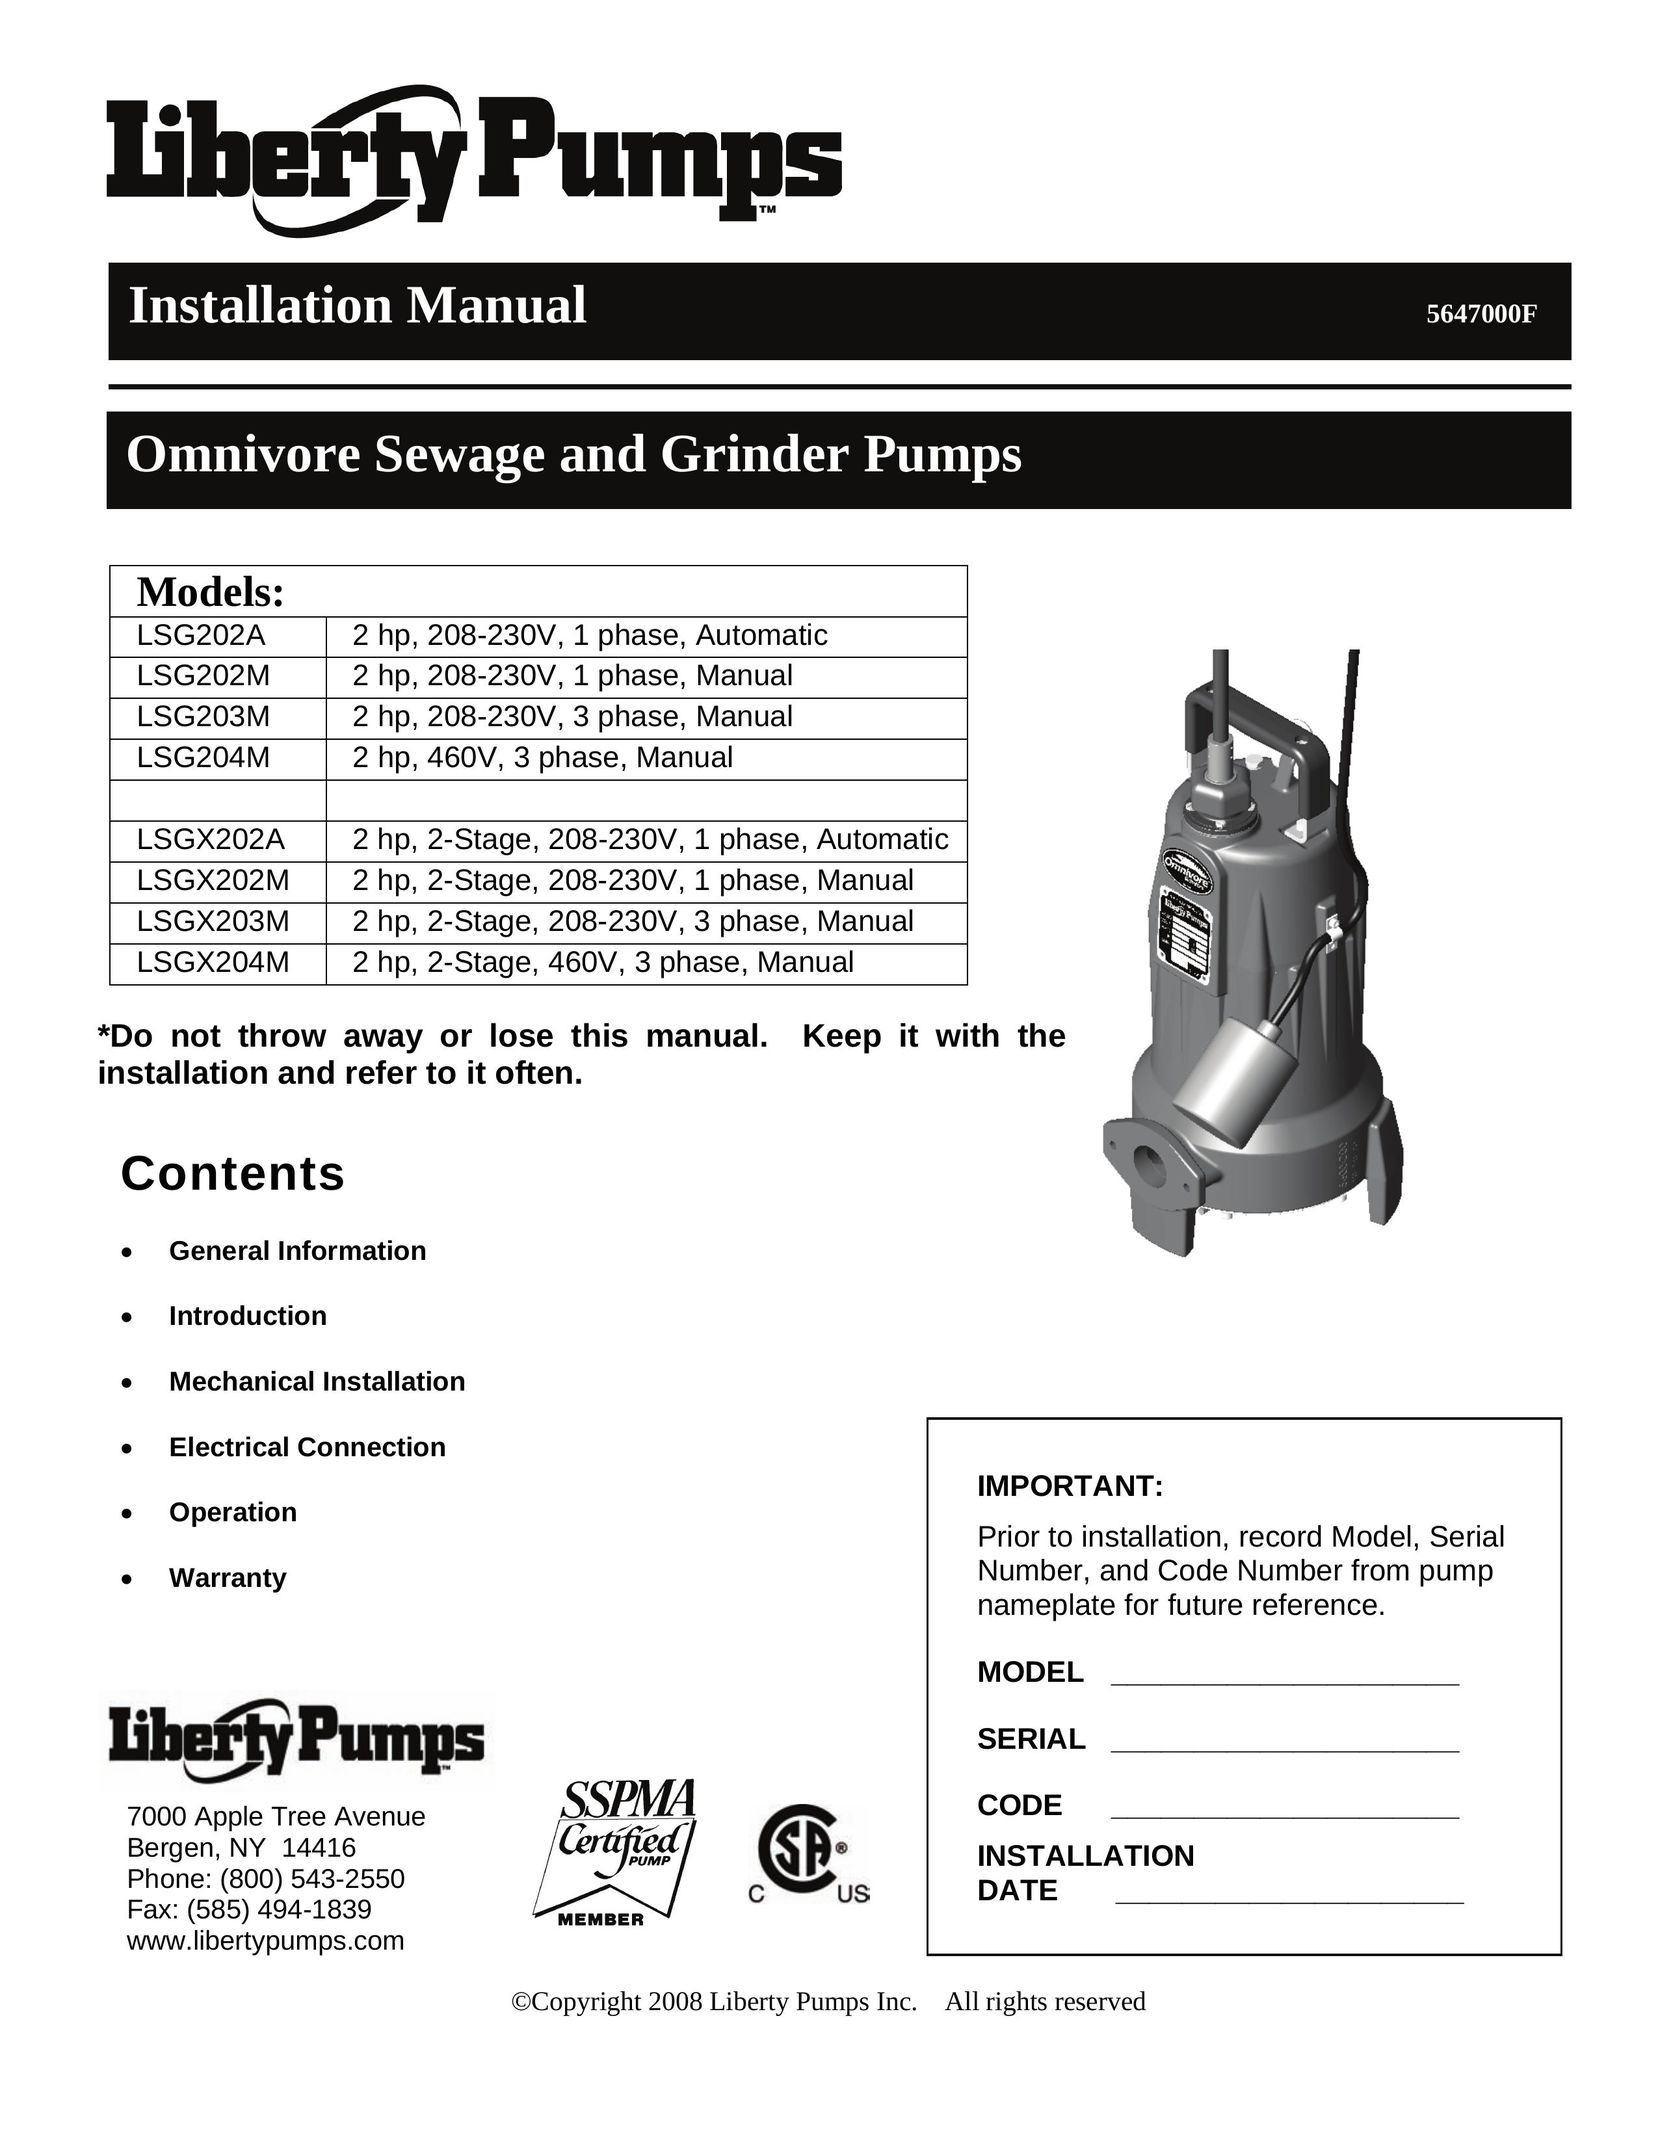 HP (Hewlett-Packard) LSG203M Grinder User Manual